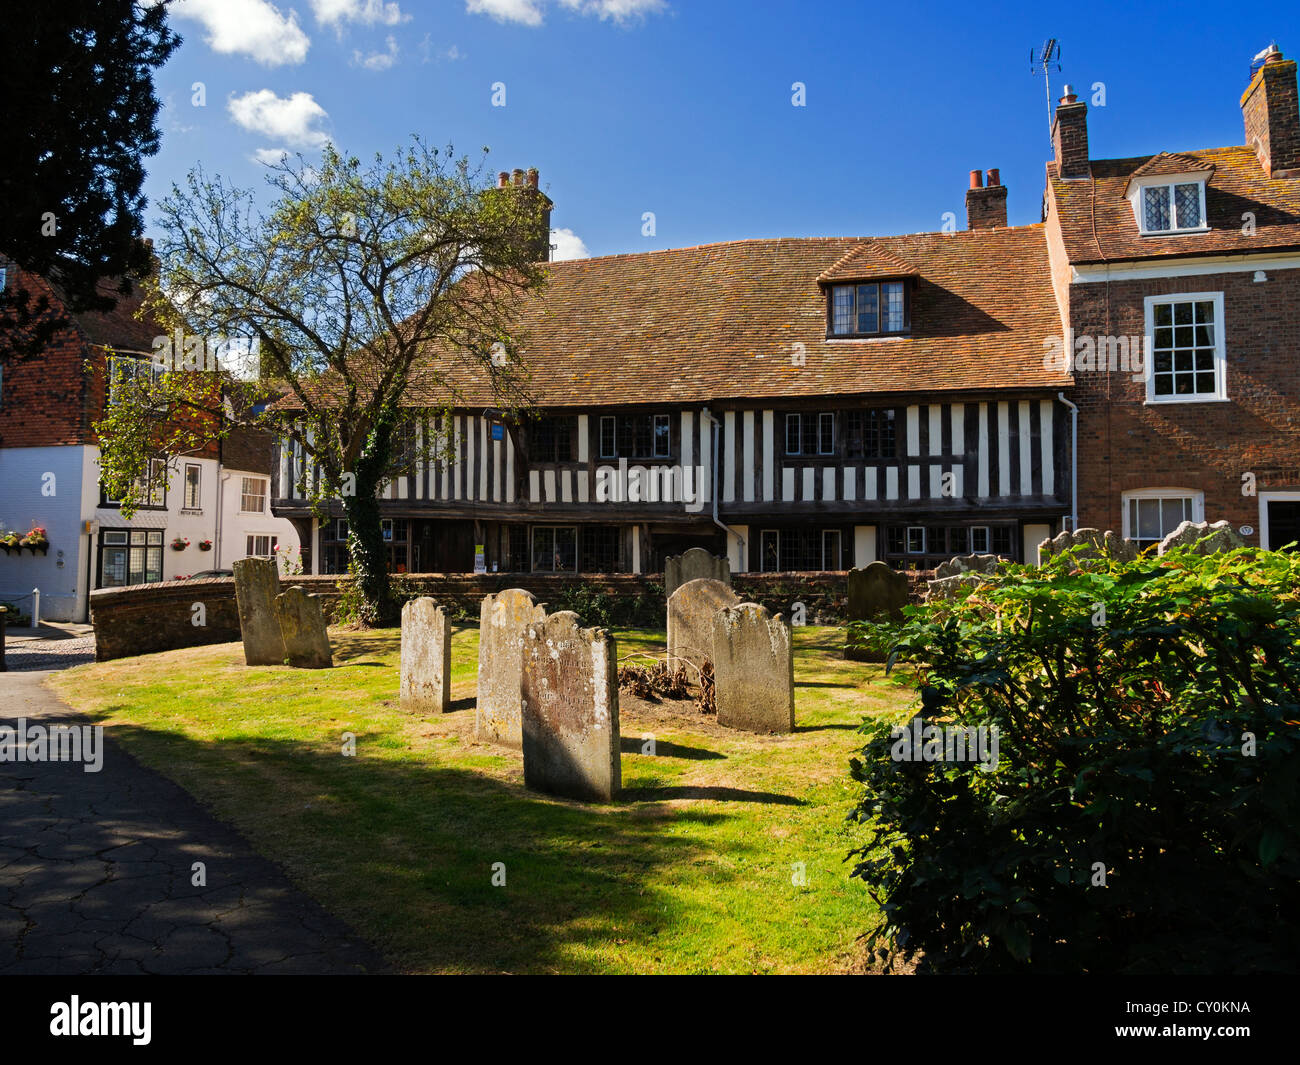 Place de l'église, le seigle, le Sussex. Une rue pittoresque de maisons anciennes à côté du cimetière dans la ville historique de Rye. Banque D'Images